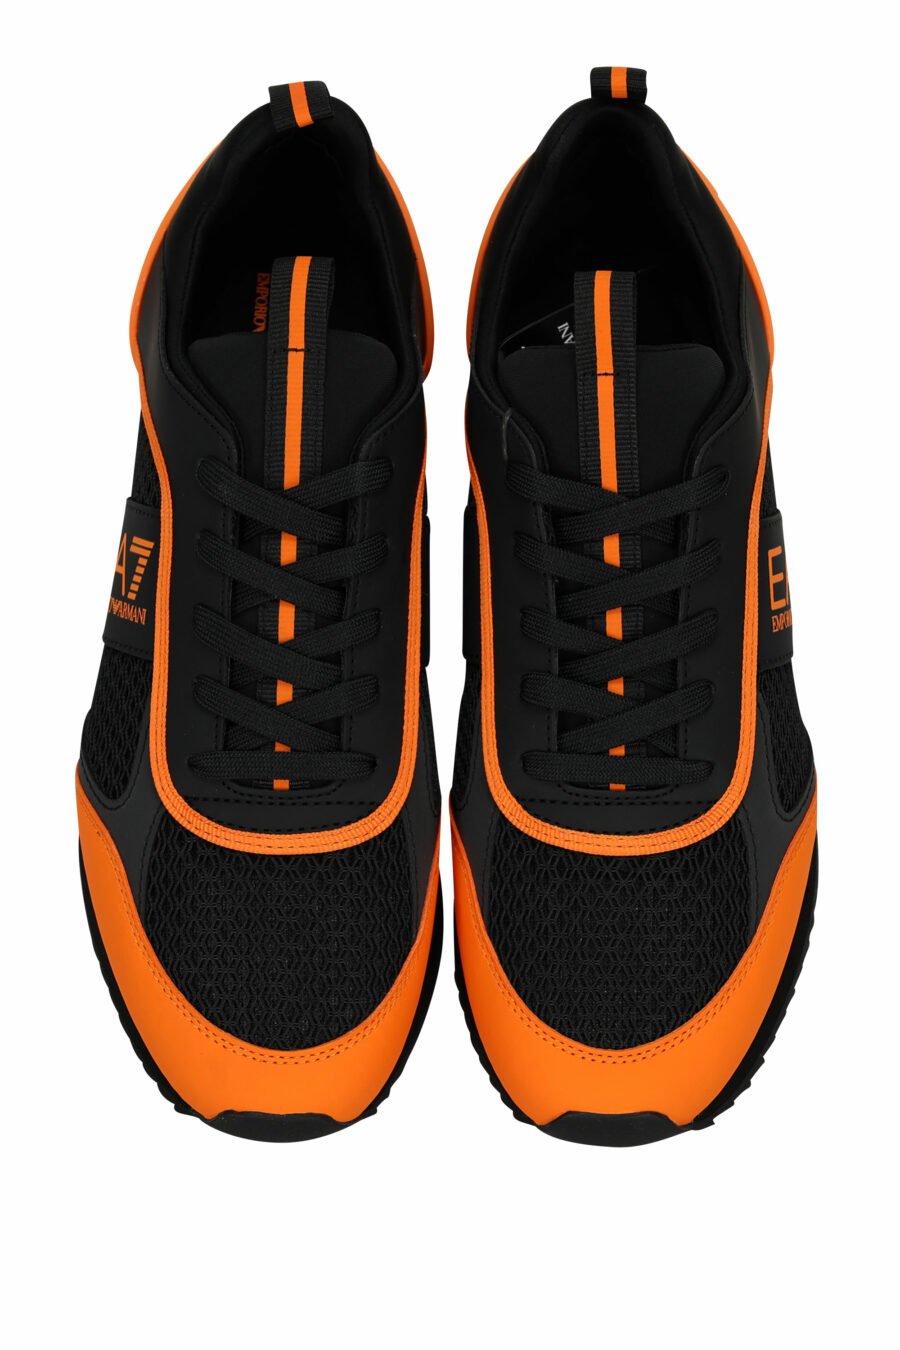 Baskets noires avec logo orange "lux identity" - 8057970798149 4